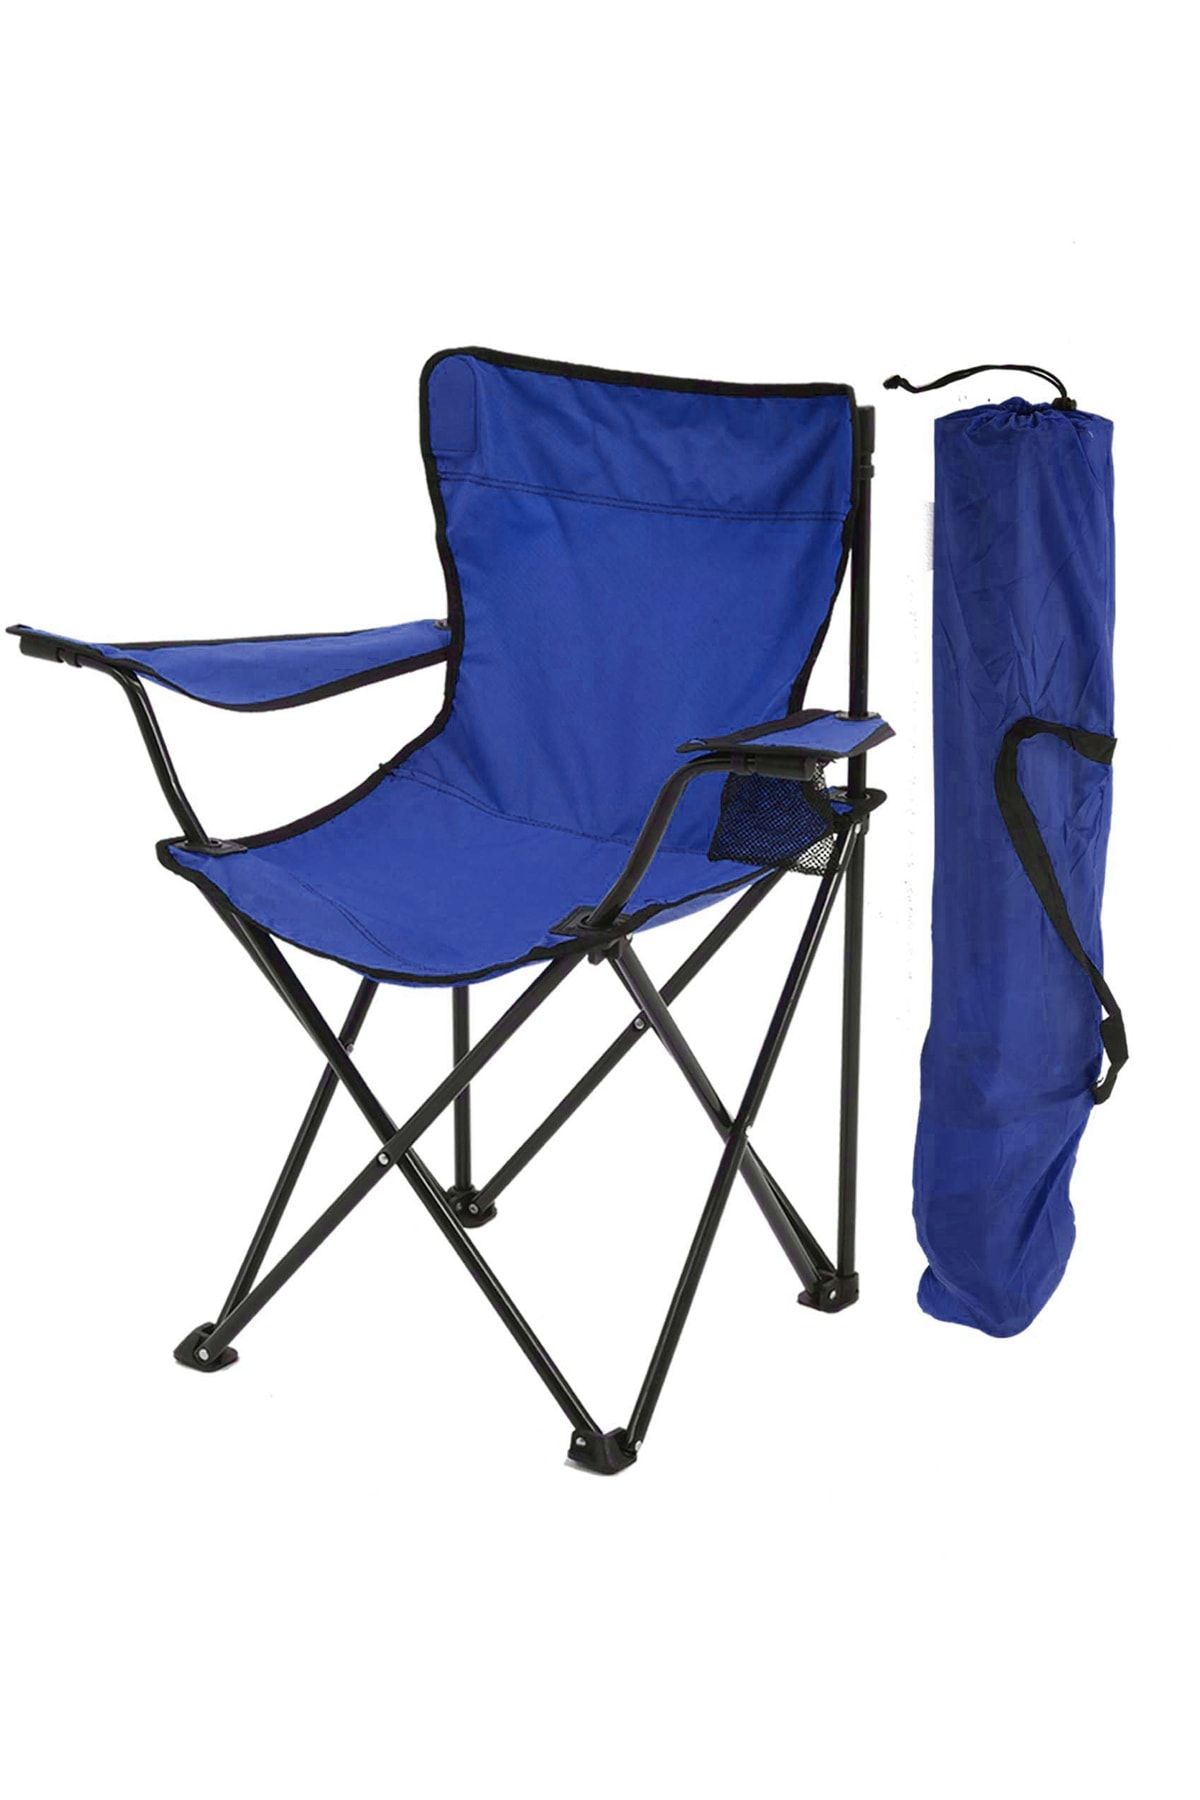 Exent Rejisör Kamp Sandalyesi Katlanır Çantalı Piknik, Plaj, Balıkçı Sandalyesi-lacivert